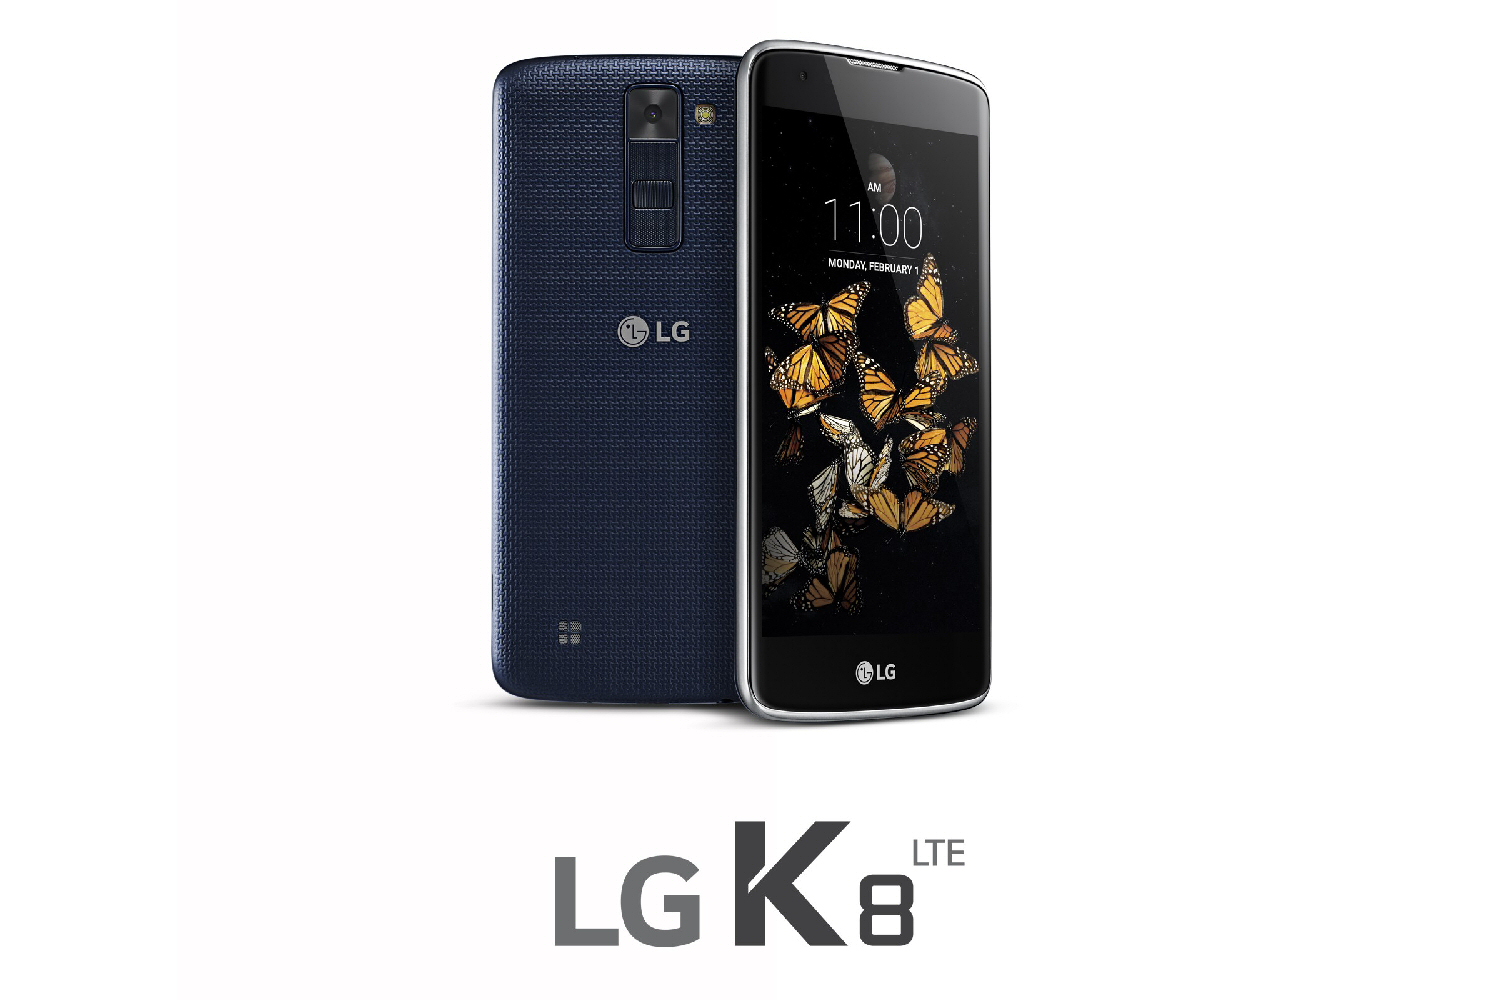 LG K8 smartphone